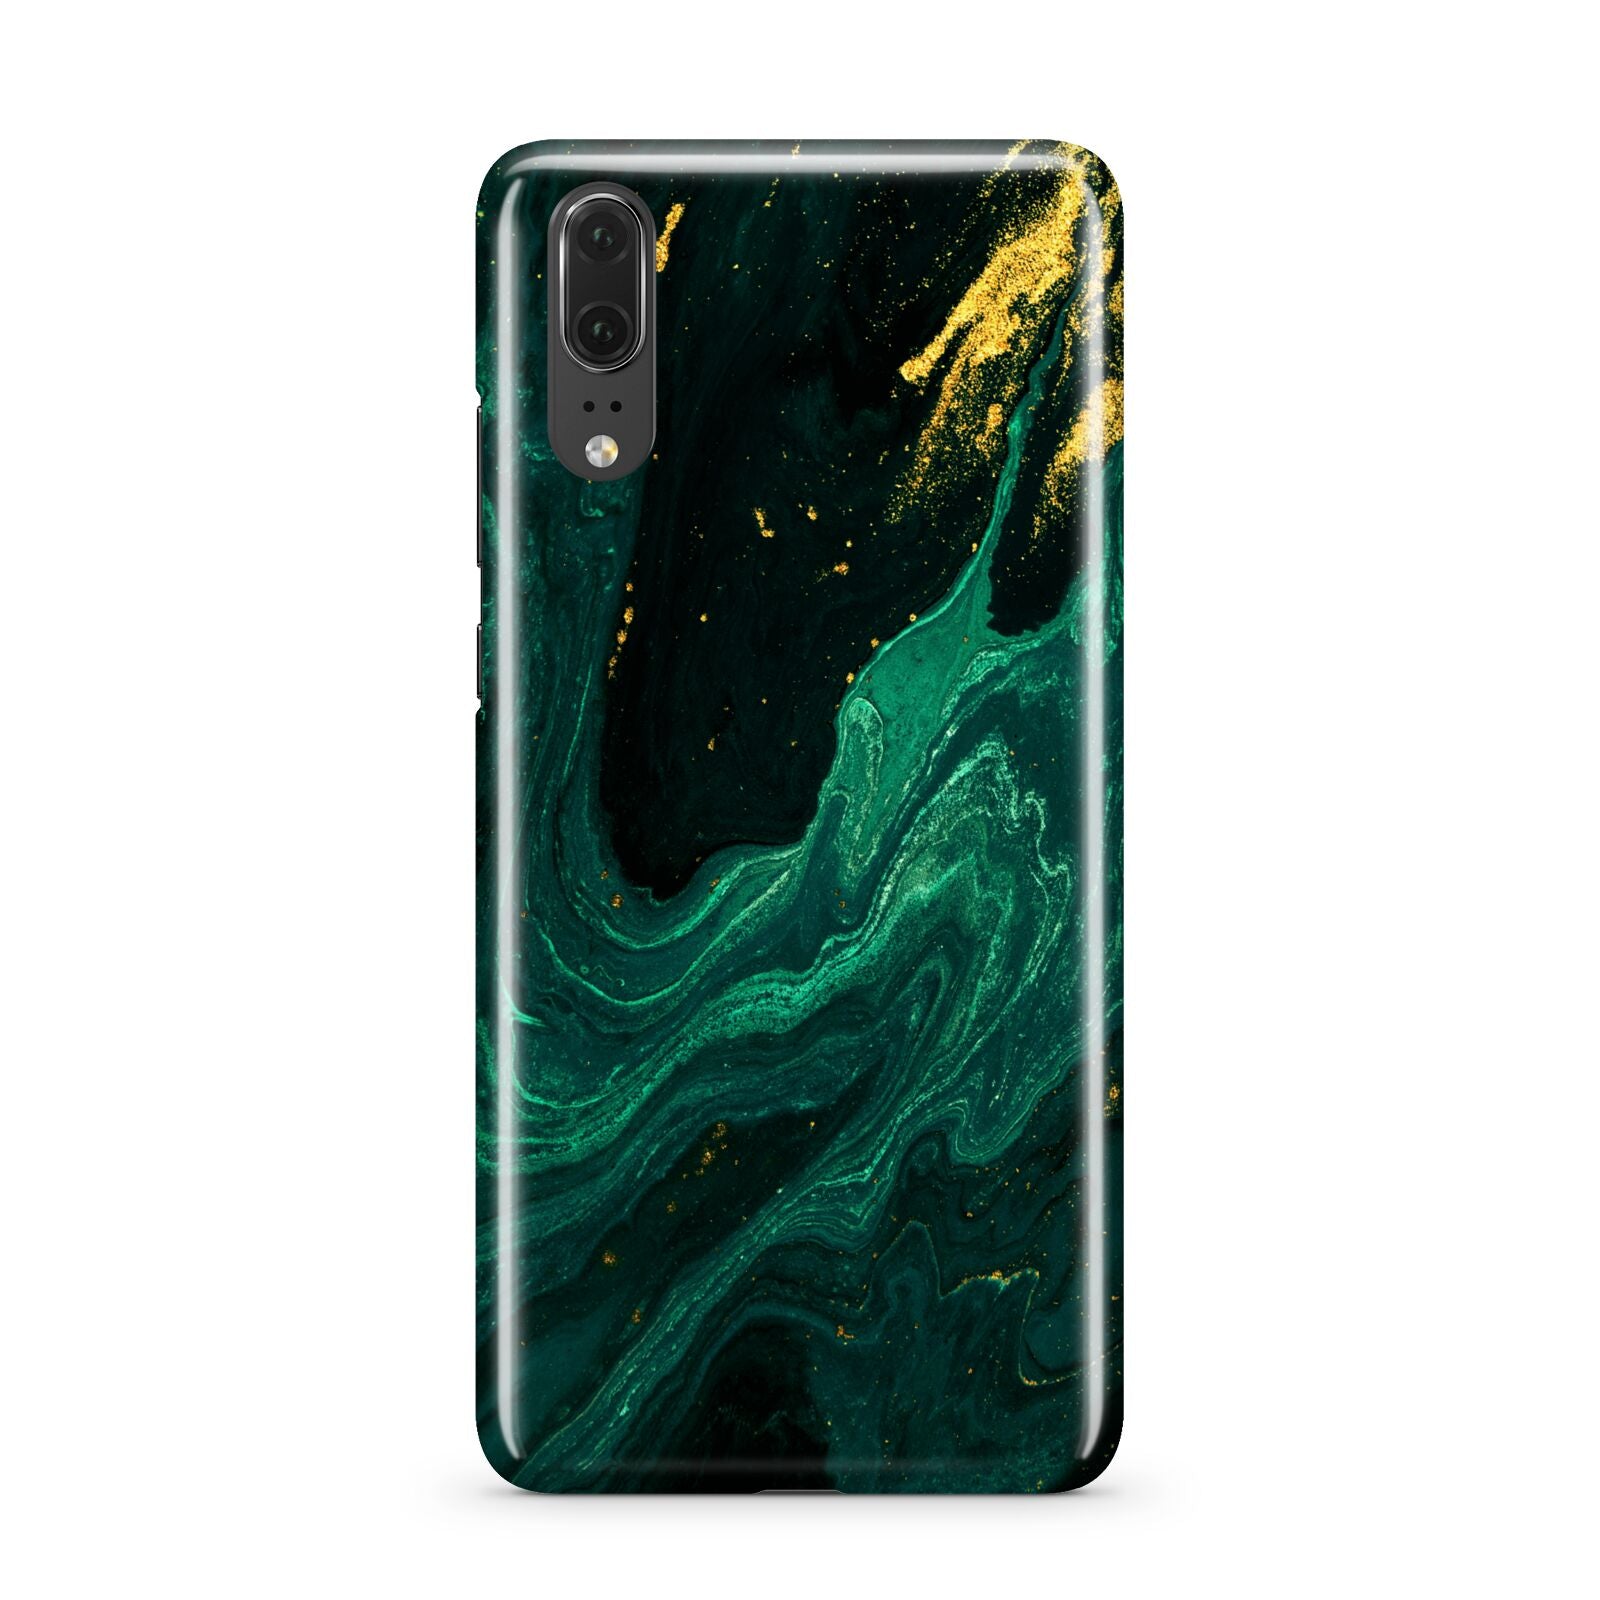 Emerald Green Huawei P20 Phone Case